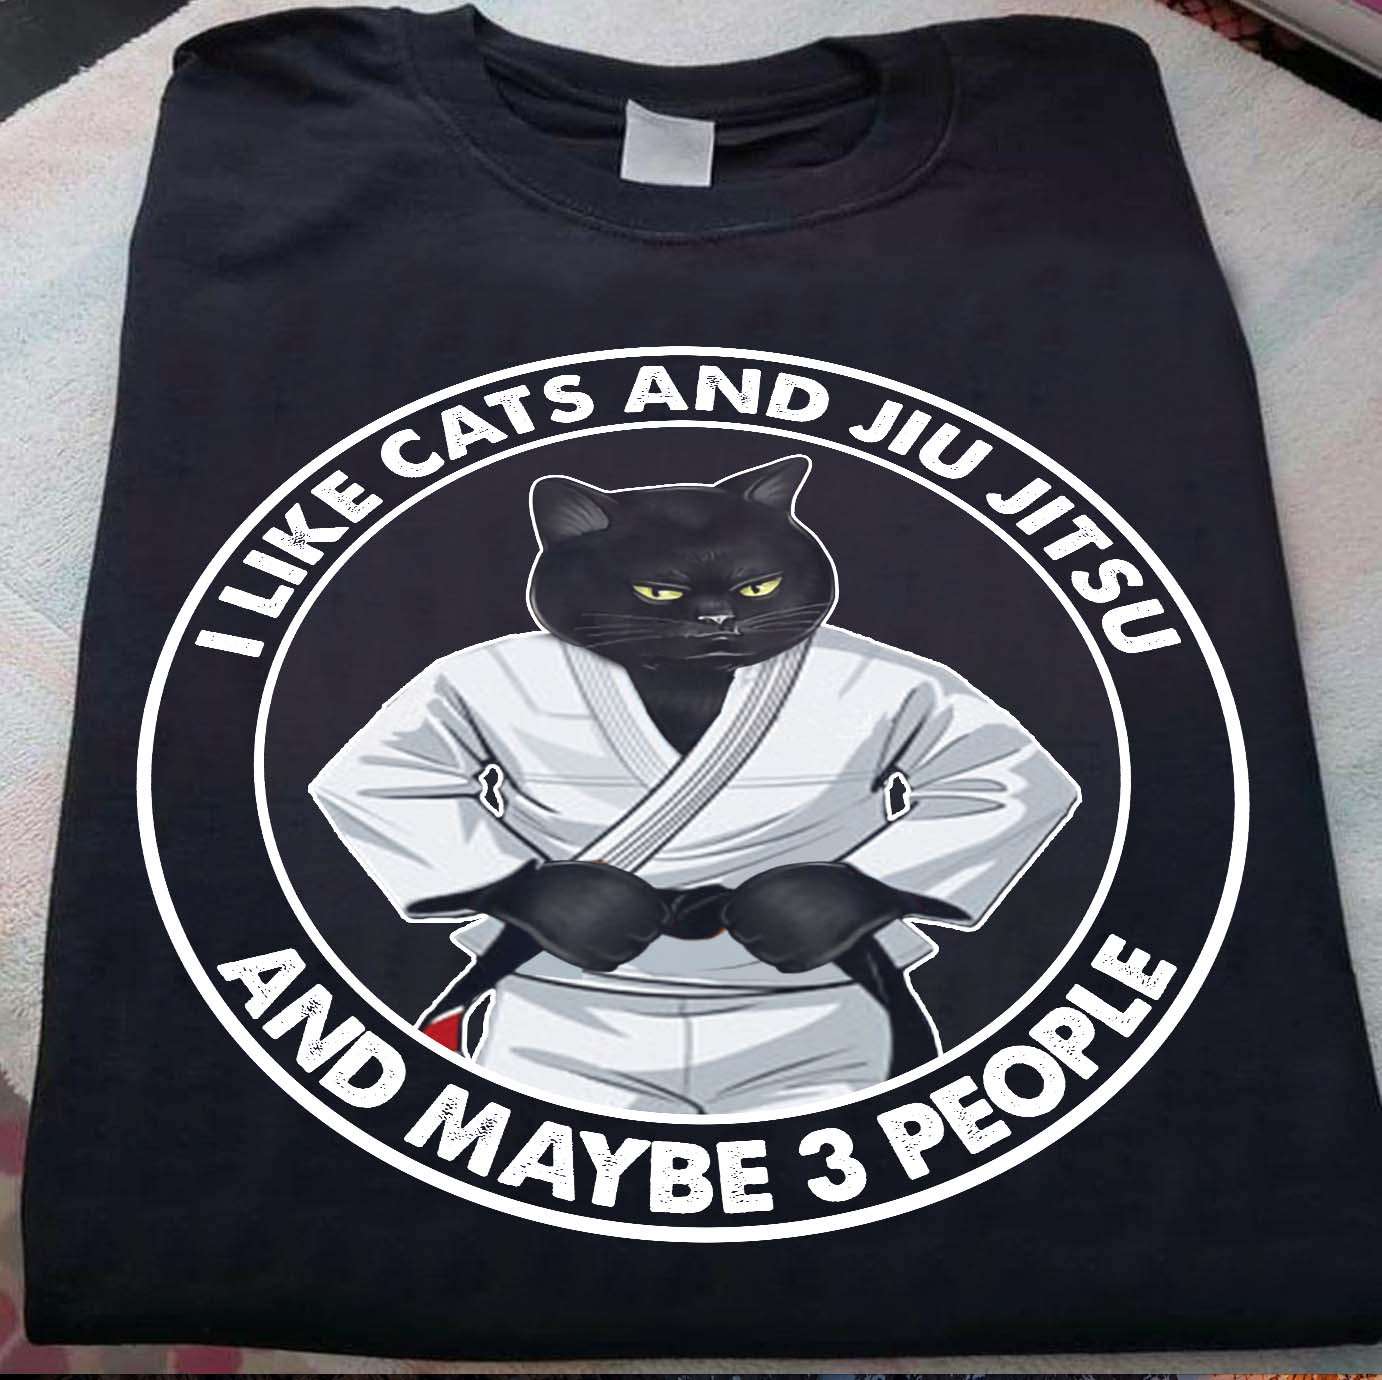 I like cats and Jiu Jitsu and maybe 3 people - Cat Jiu Jitsu, black cat kungfu